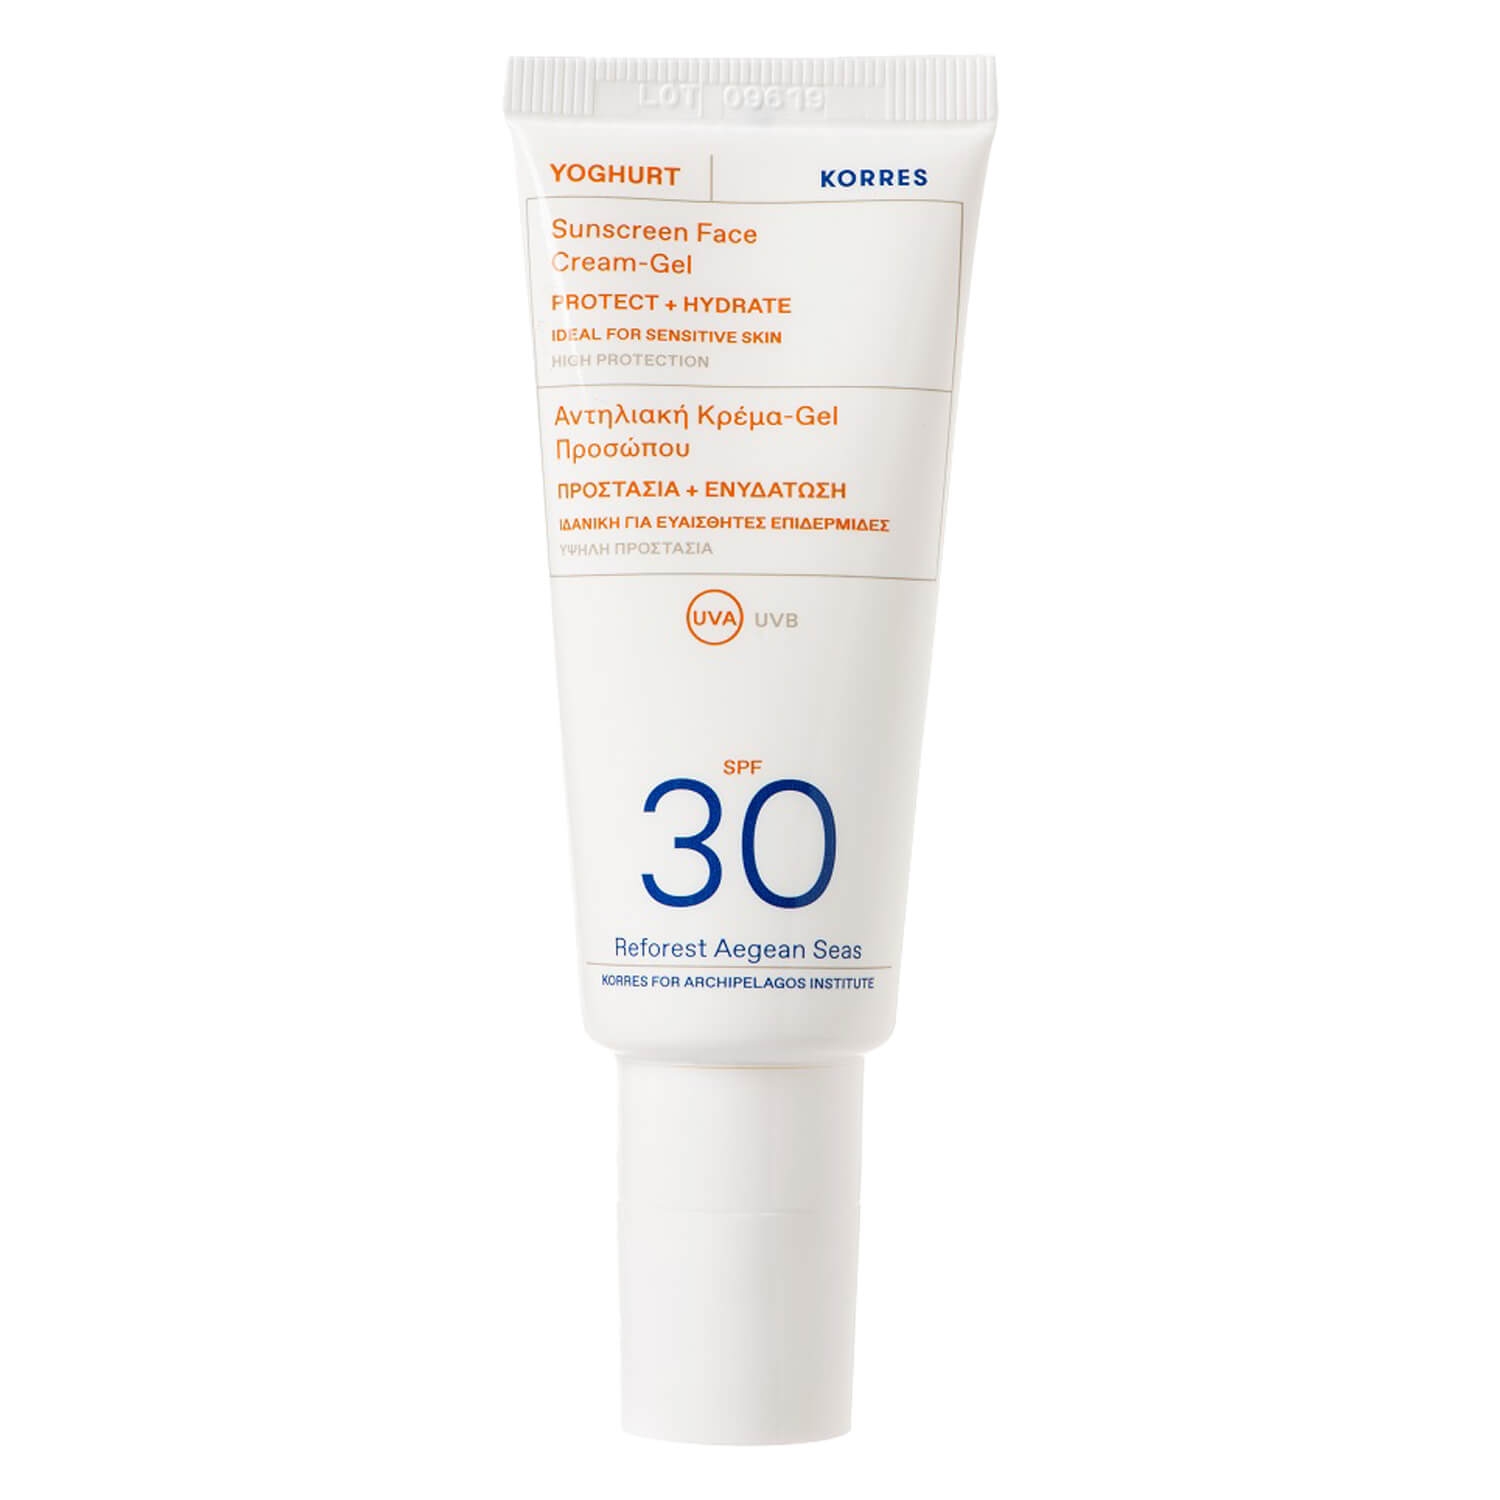 Produktbild von Korres Care - Yoghurt Sunscreen Face Cream-Gel SPF30